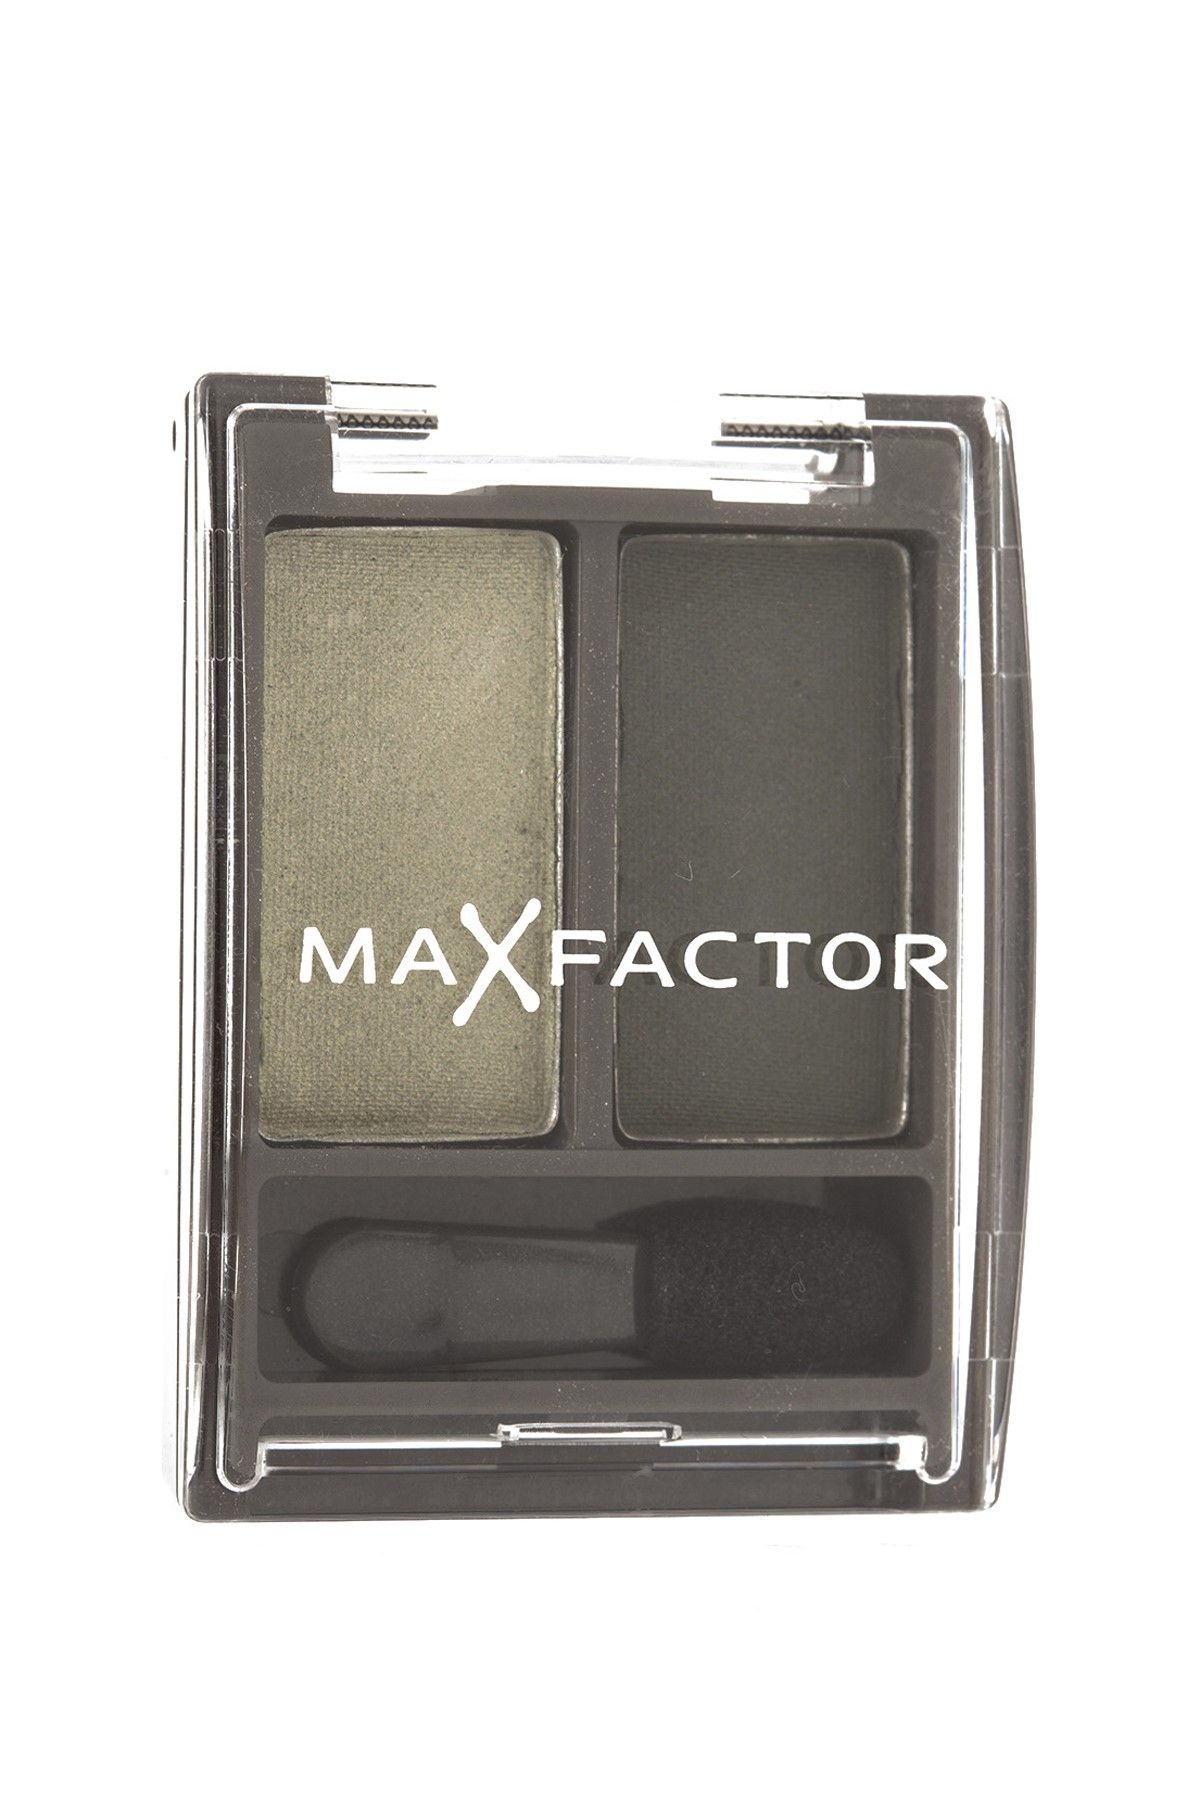 Max Factor Colour Perfectıon Duo 465 50053322